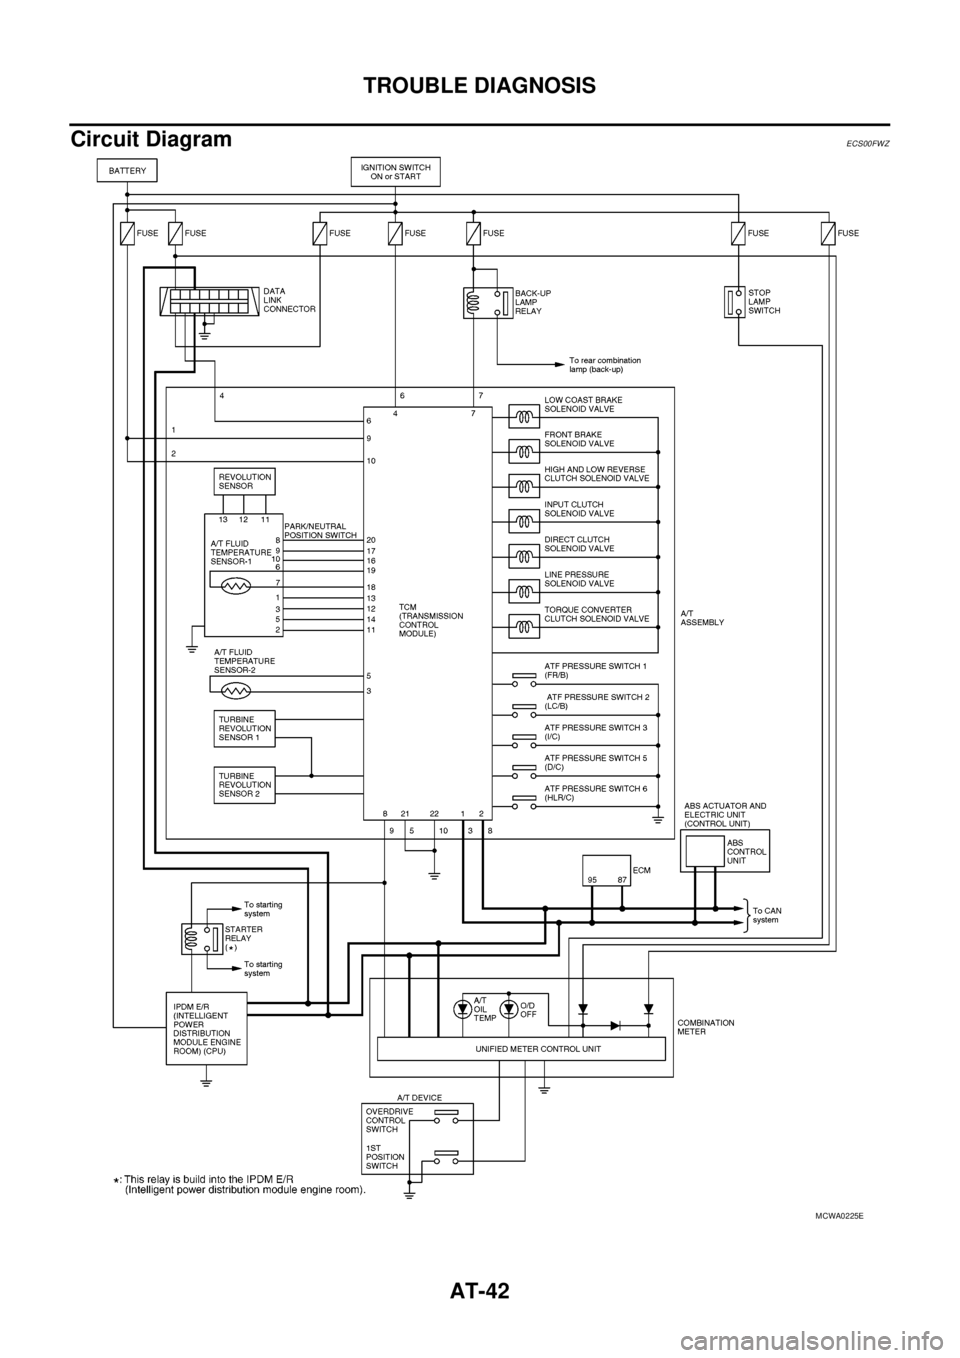 NISSAN NAVARA 2005  Repair Workshop Manual AT-42
TROUBLE DIAGNOSIS
Circuit Diagram
ECS00FWZ
MCWA0225E 